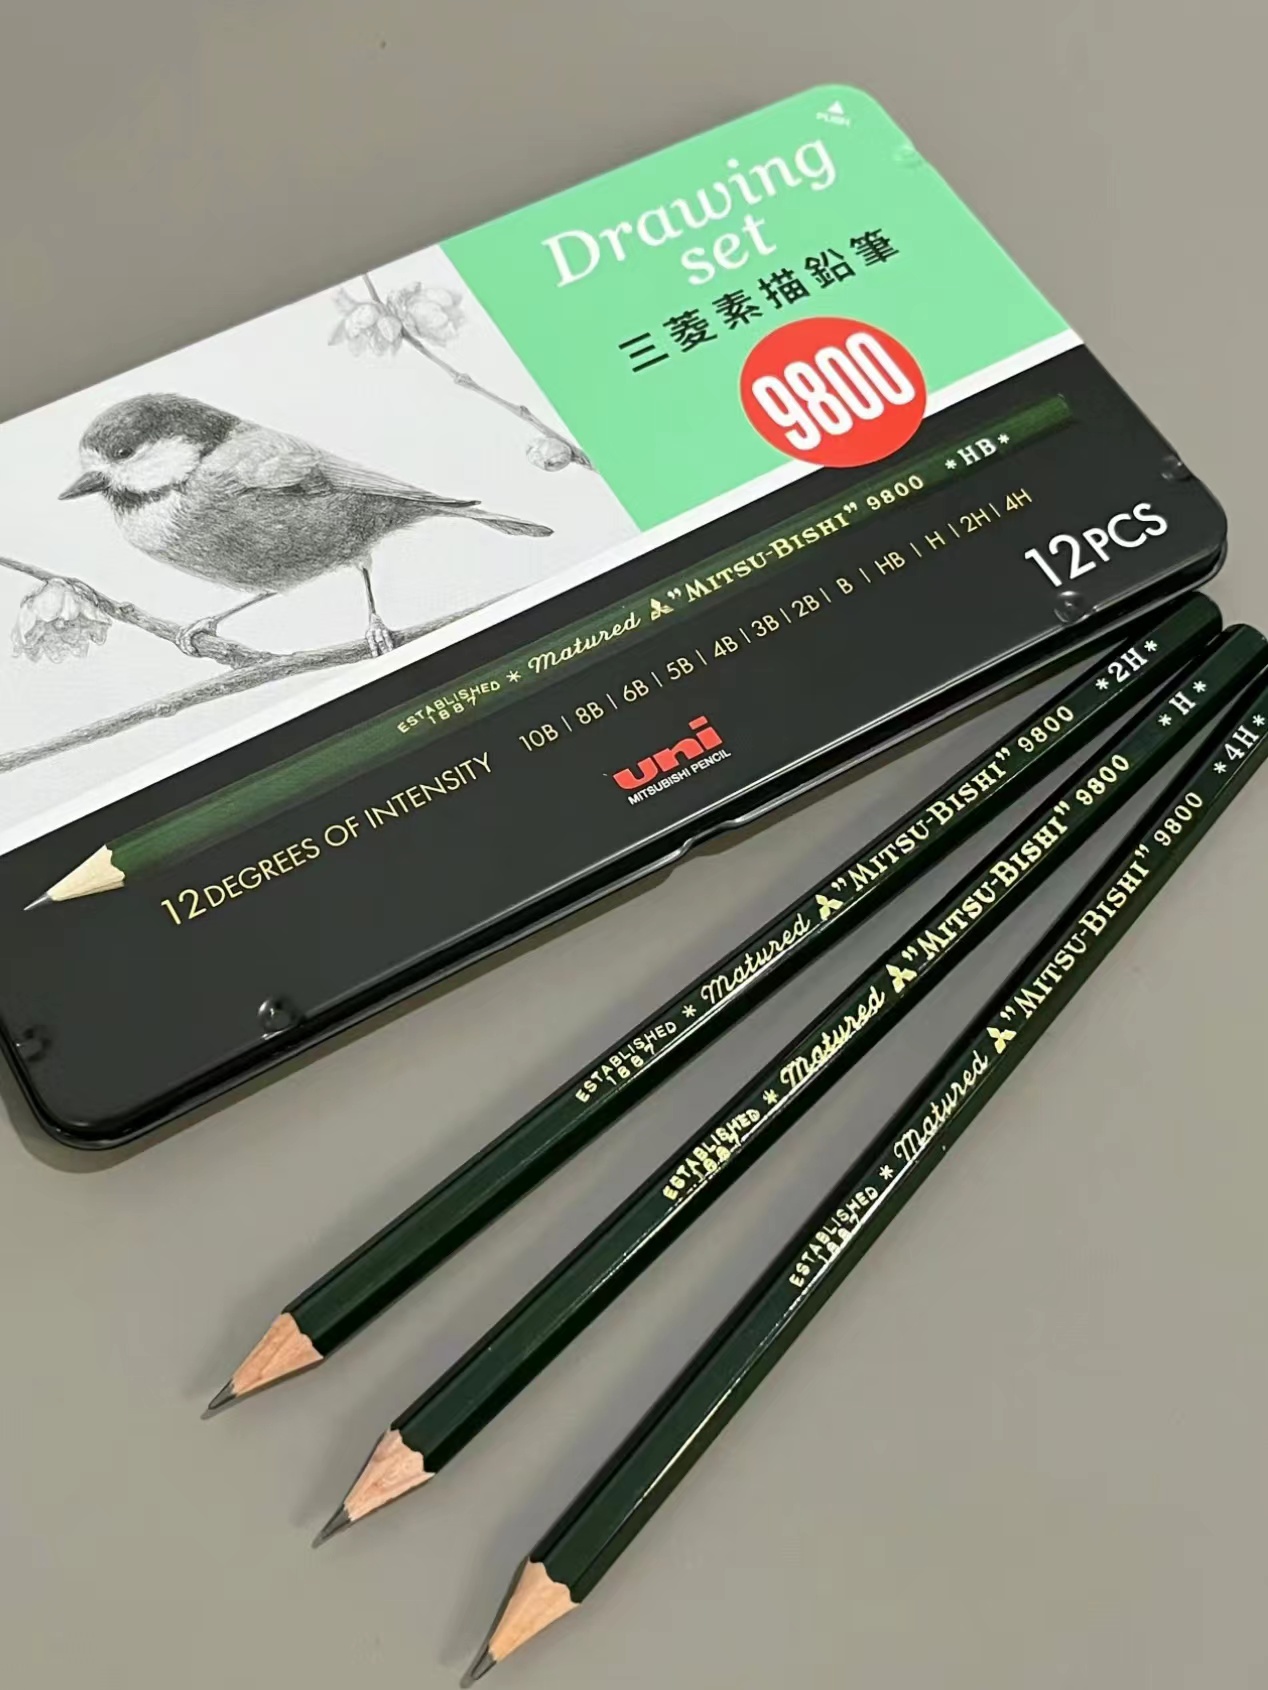 日本UNI三菱进口9800铅笔12支盒装素描绘图美术专业铅笔2b/HB涂卡答题小学生幼儿园绘画铅笔一年级考试用笔